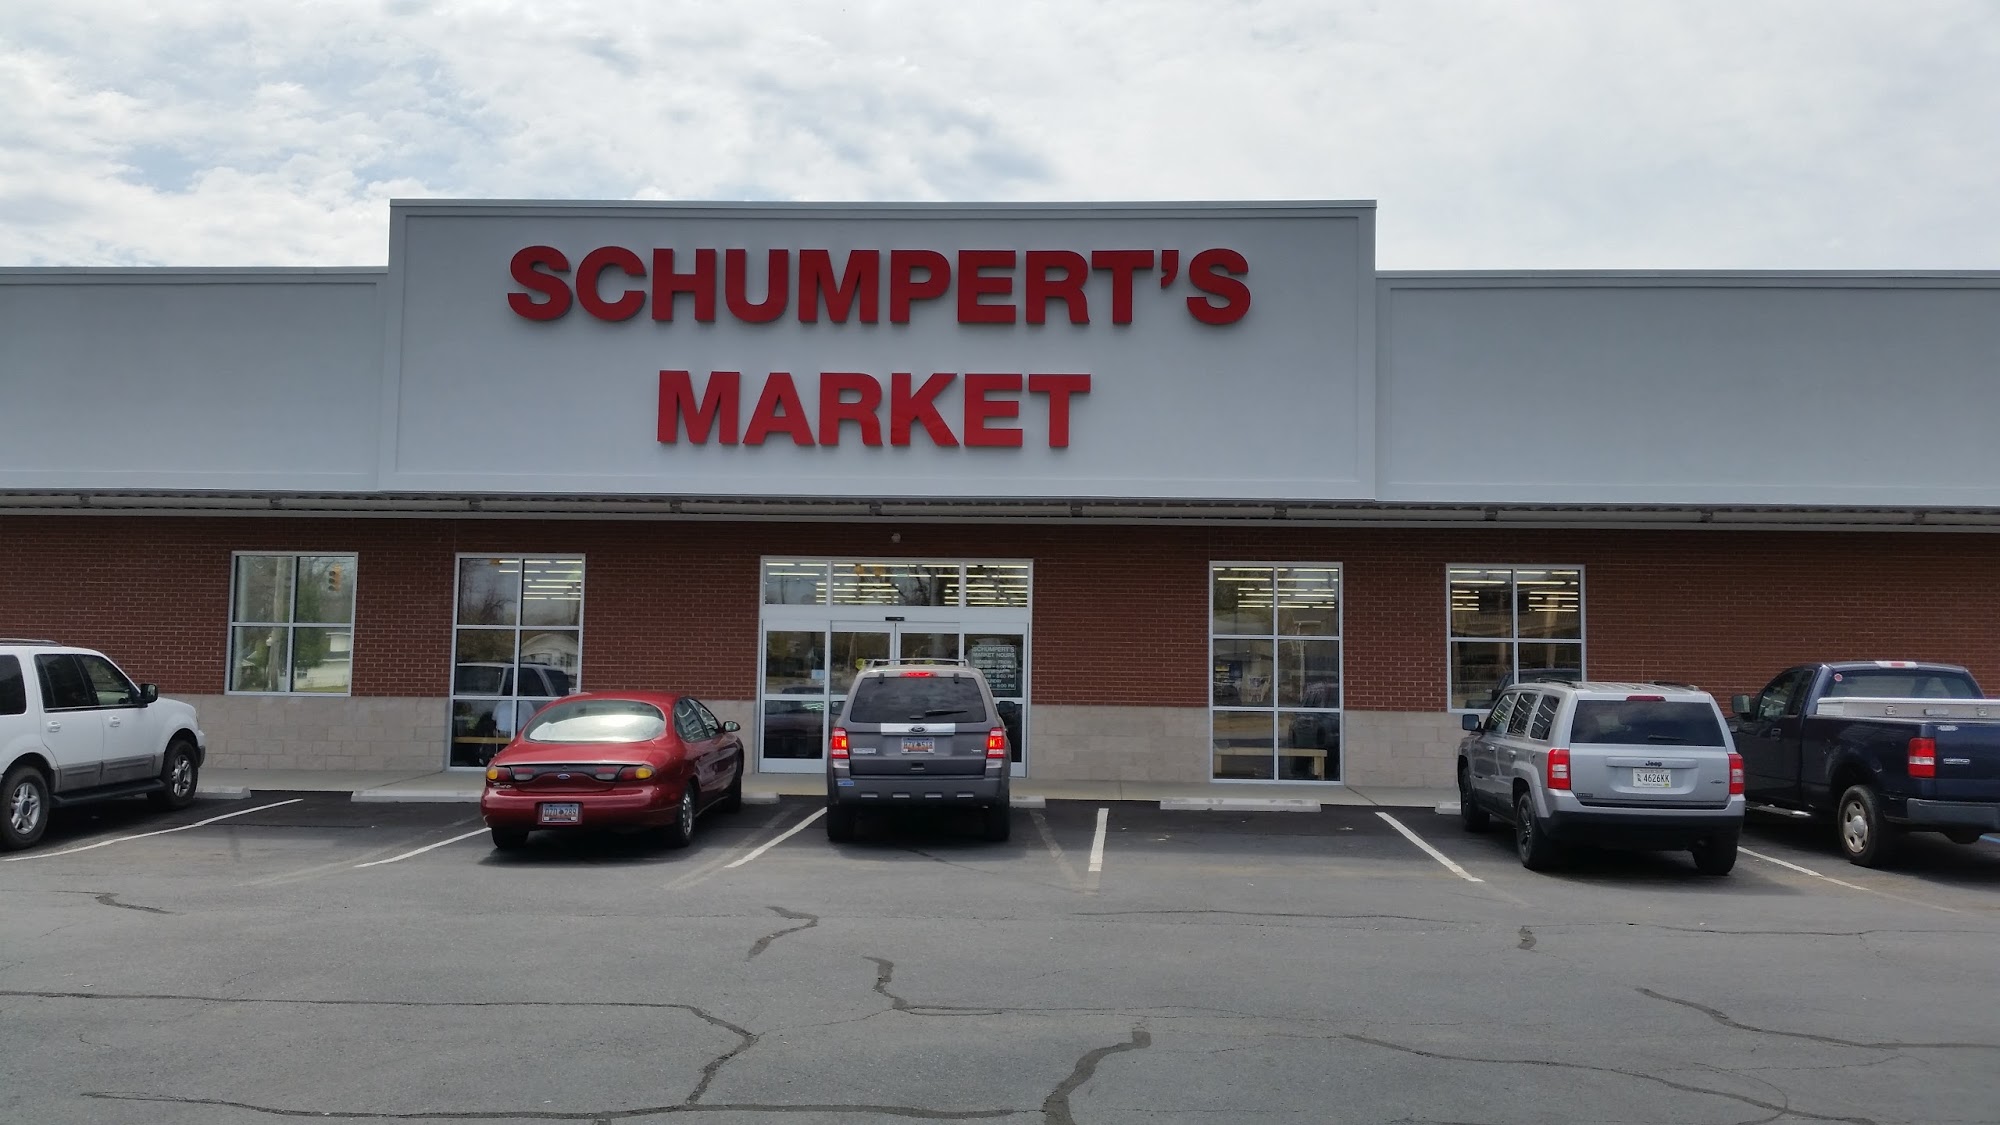 Schumpert's Market